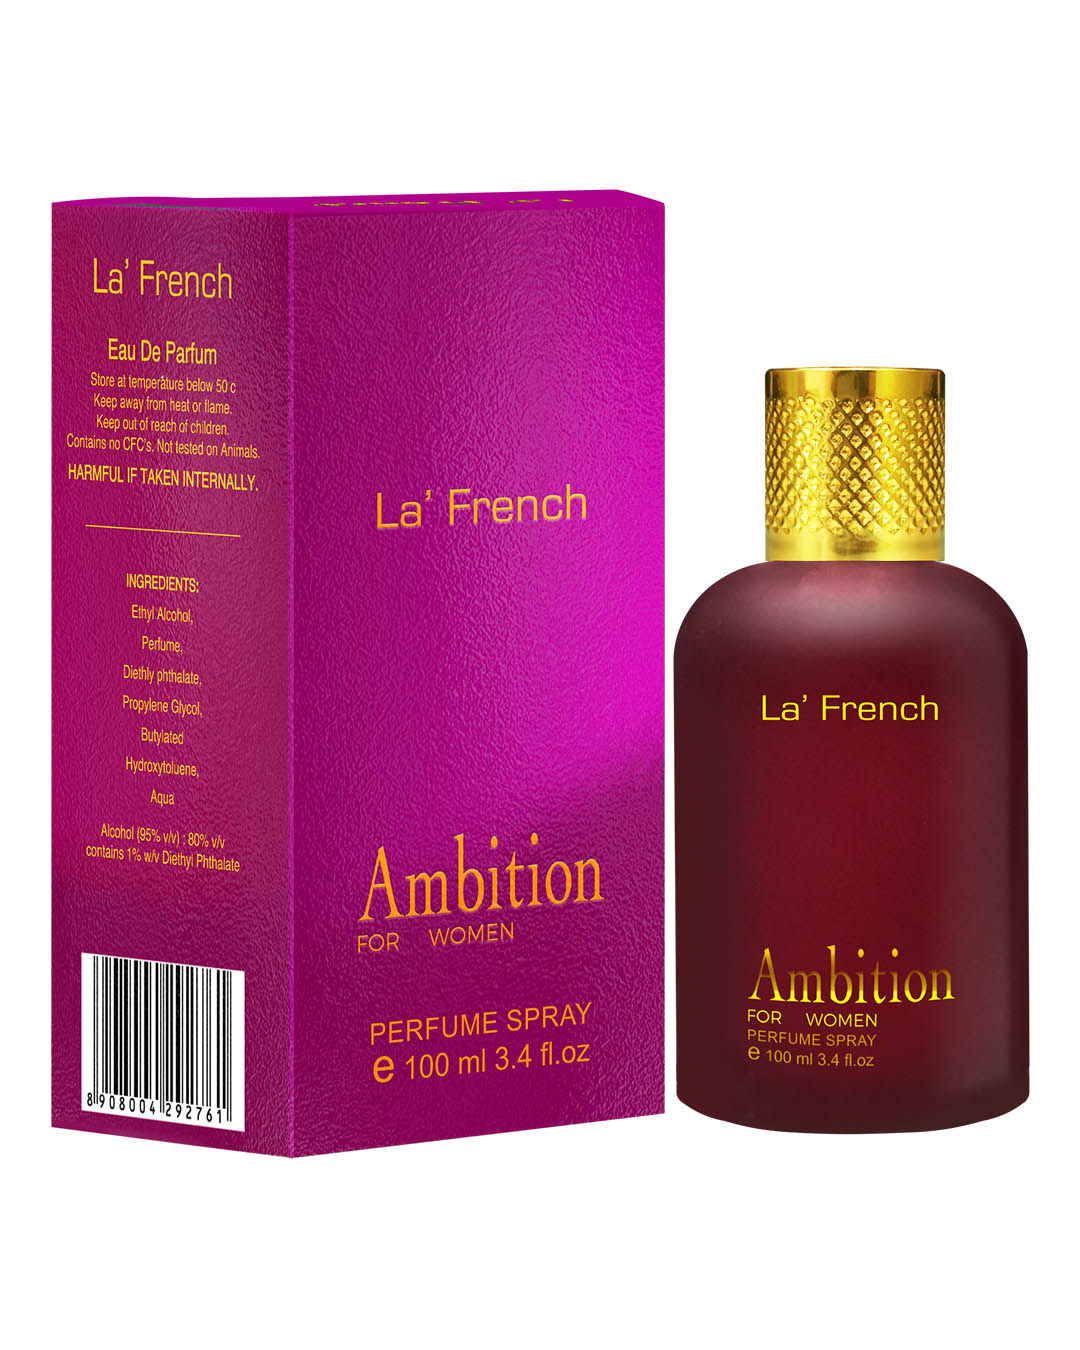 Buy LA' French Ambition Perfume By La' French, Eau De Parfum (100 ml) - Ideal For Women - Purplle